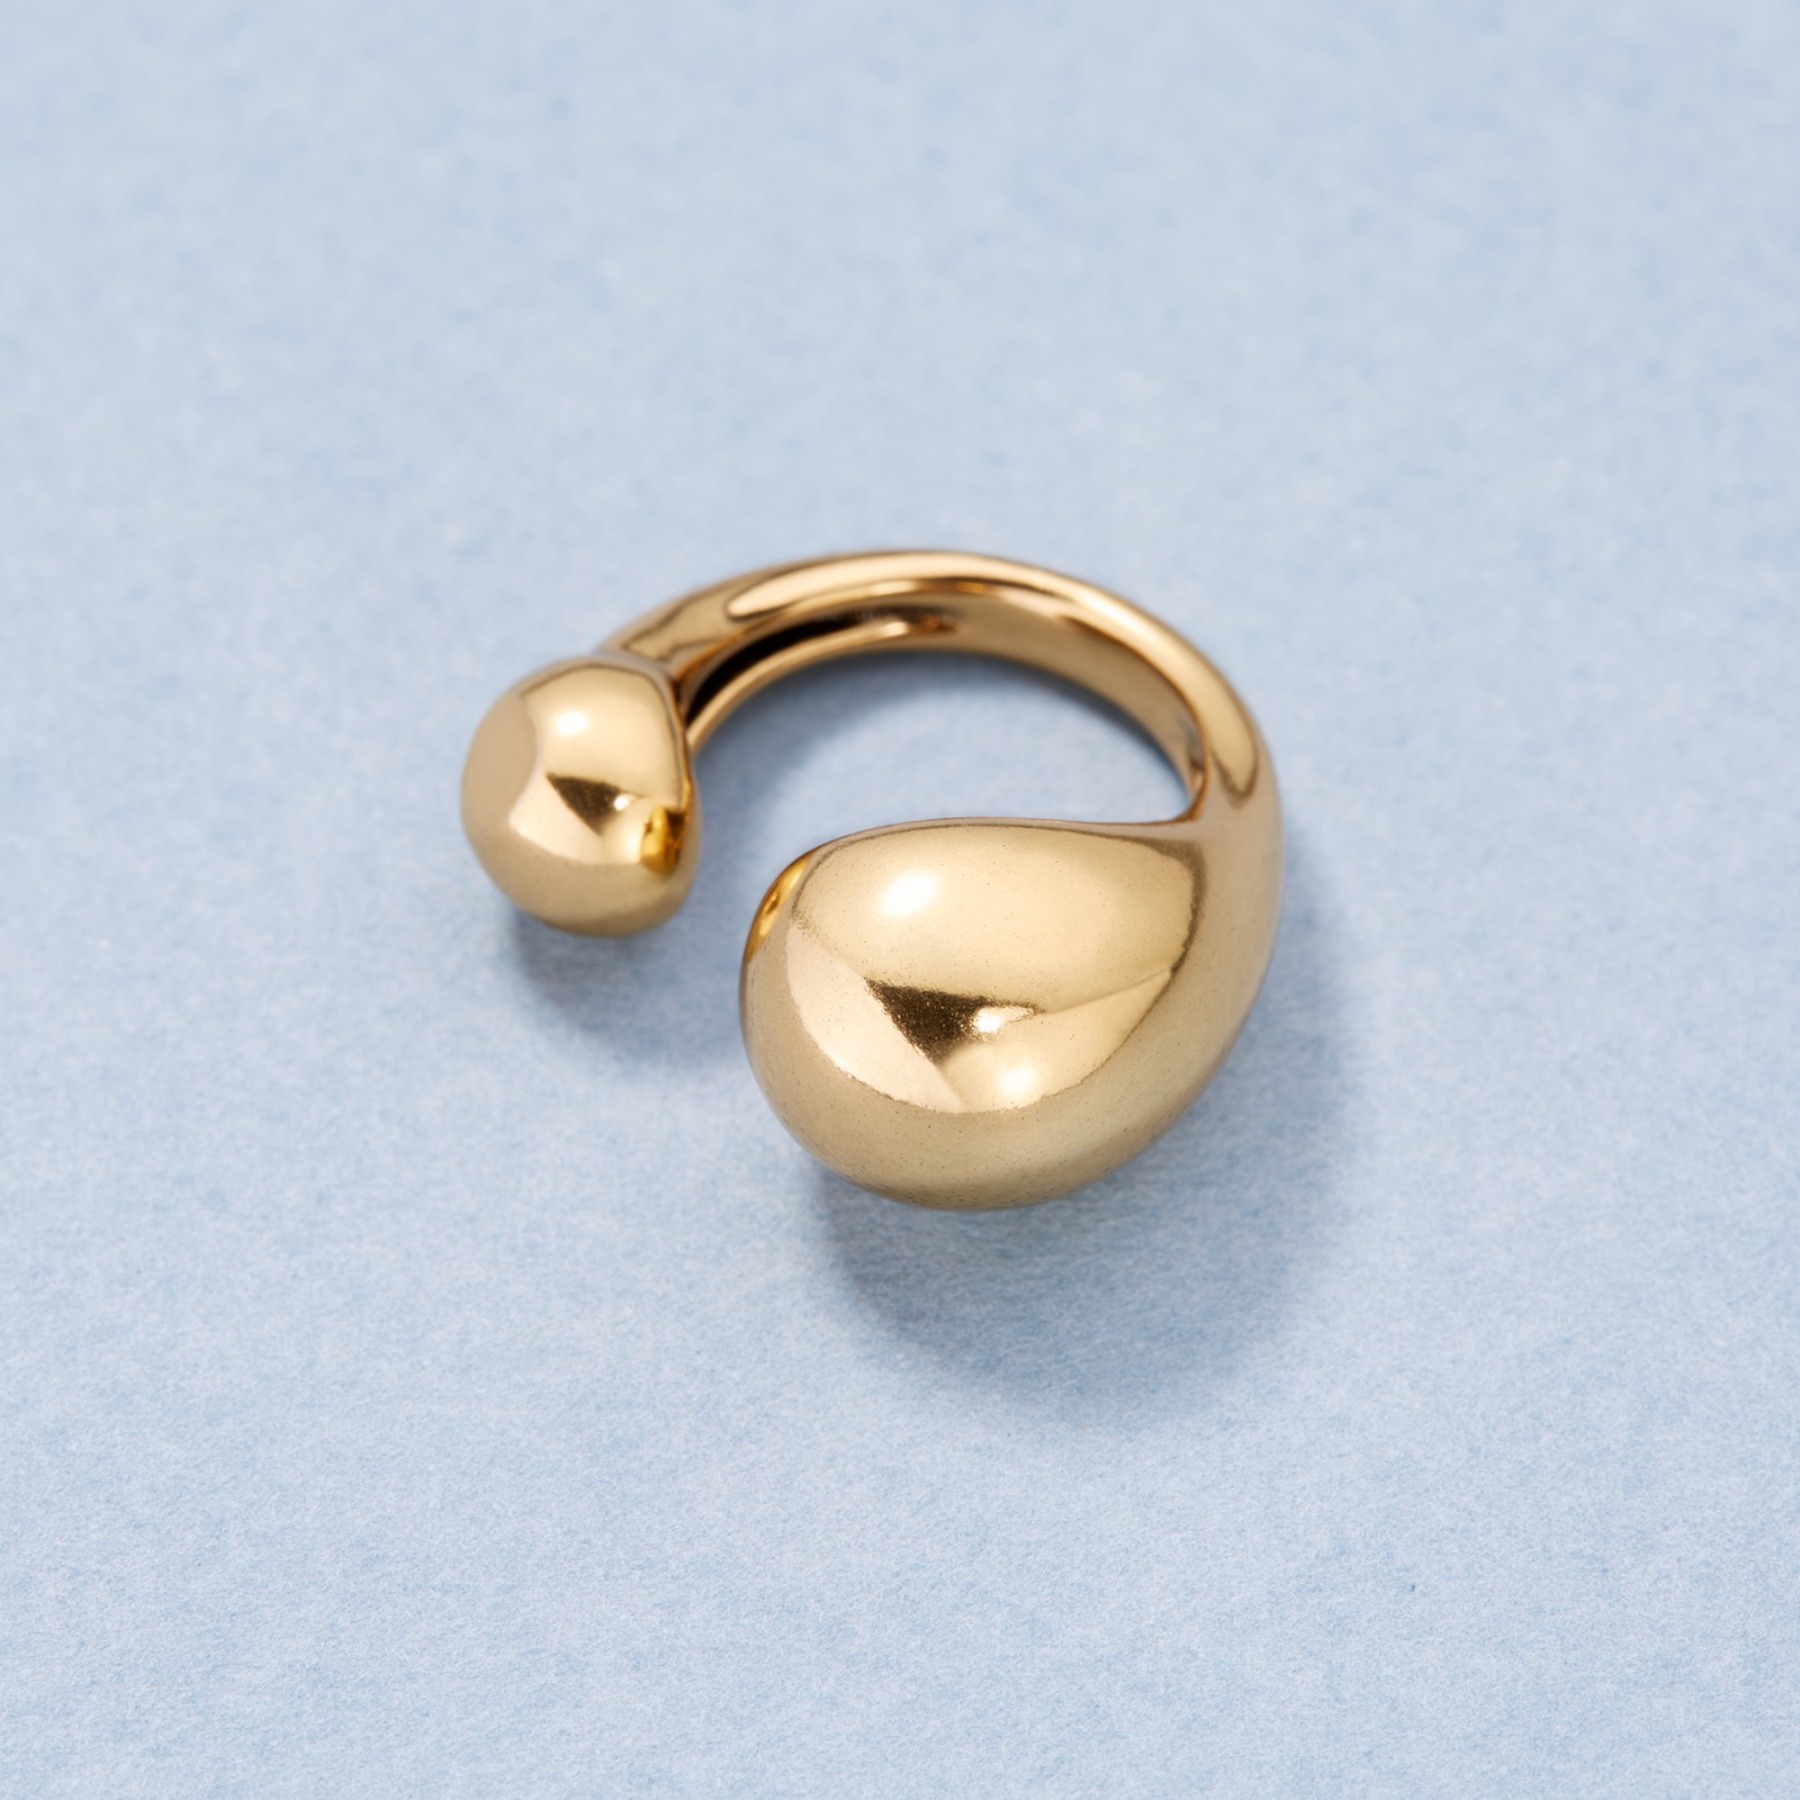 Oryginalny, otwarty pierścień w minimalistycznym stylu. ISTOTA LEKKOŚCI